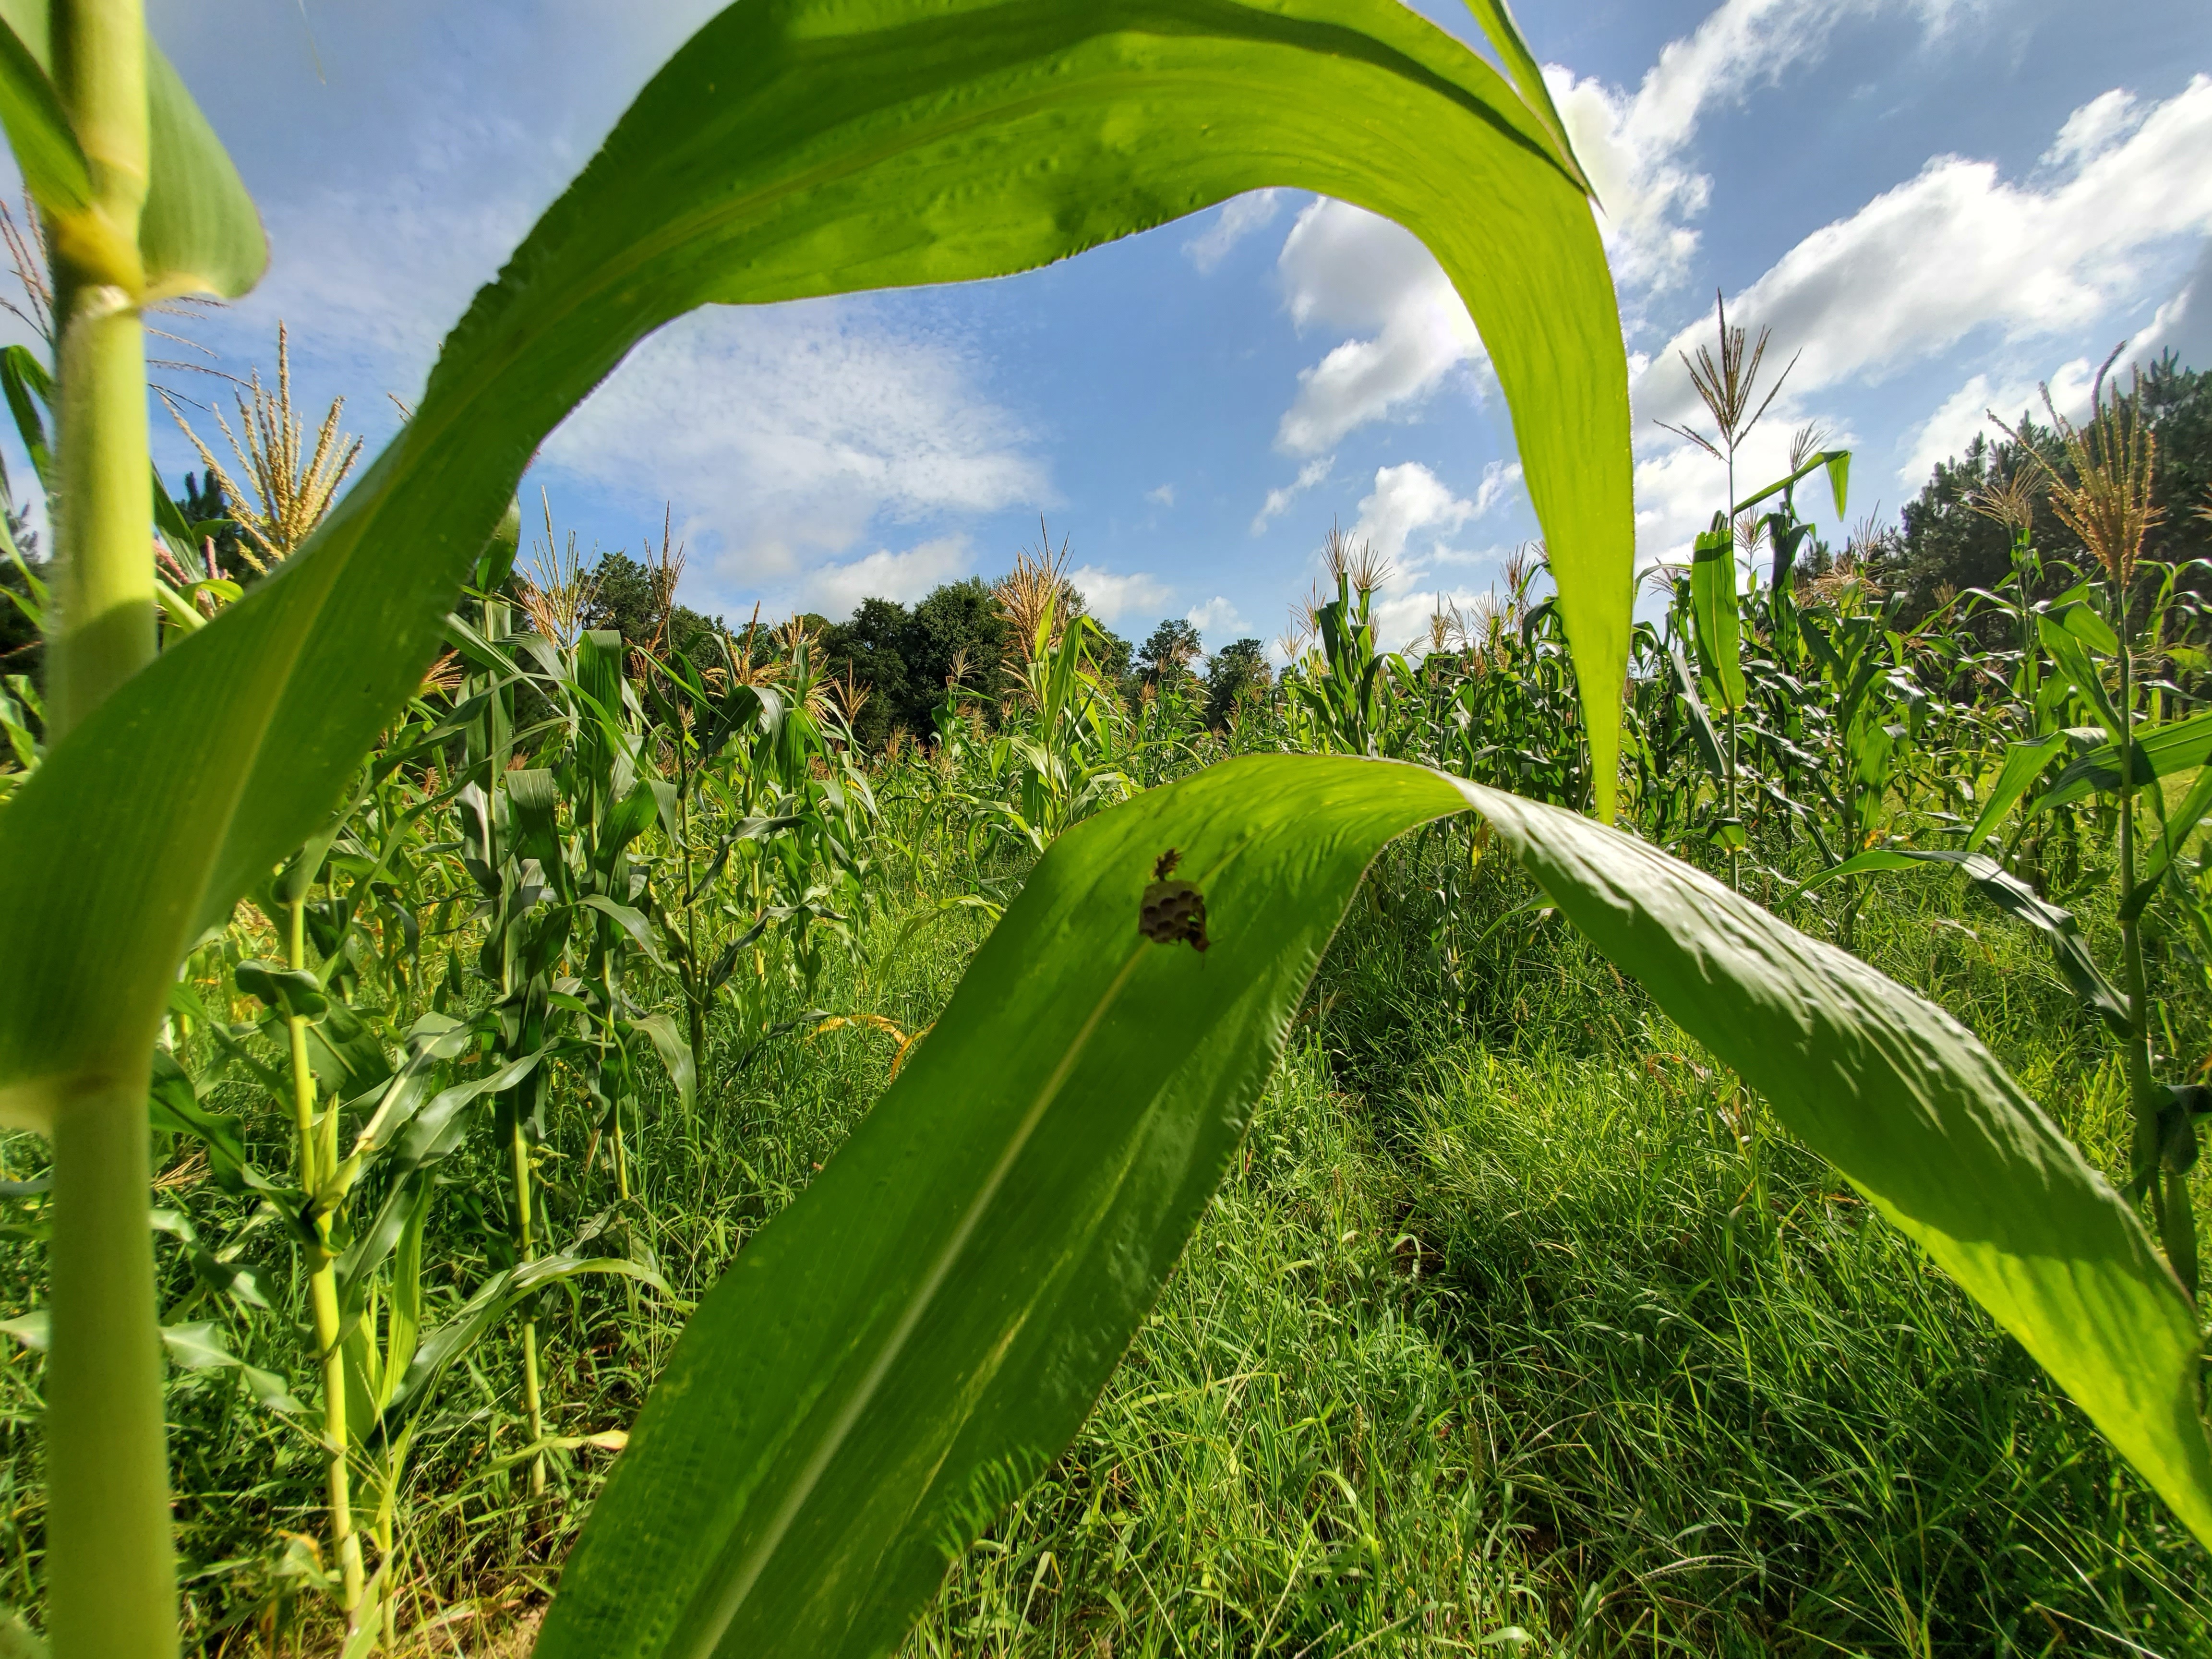 Wasps in corn field